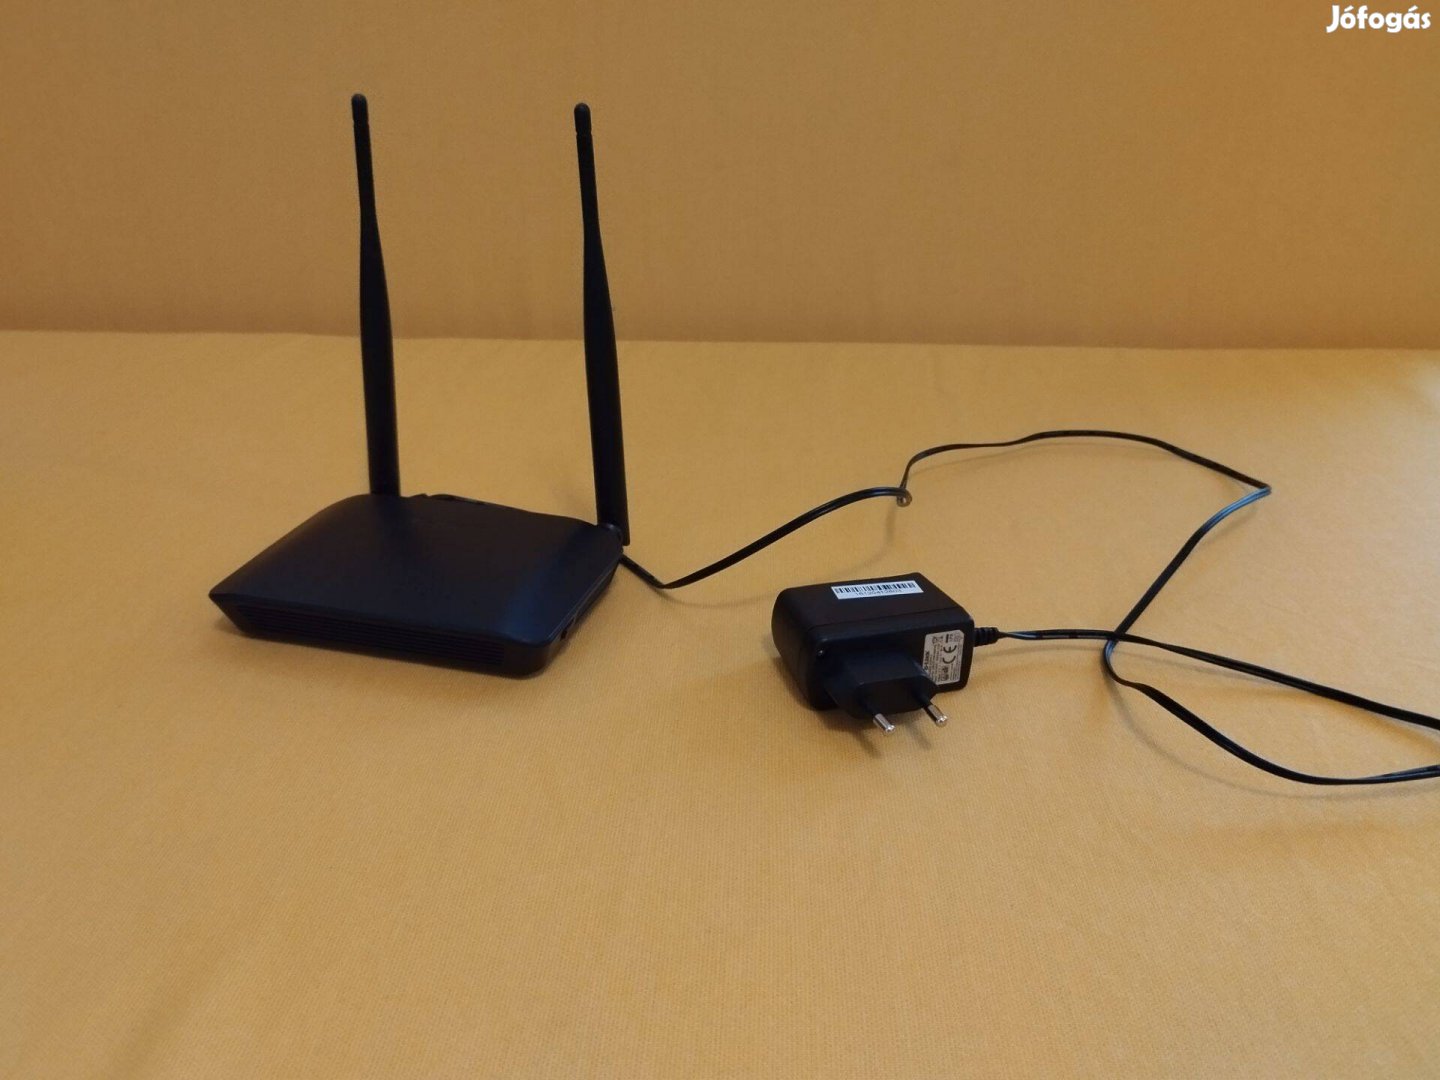 D-Link DIR605L wifi router